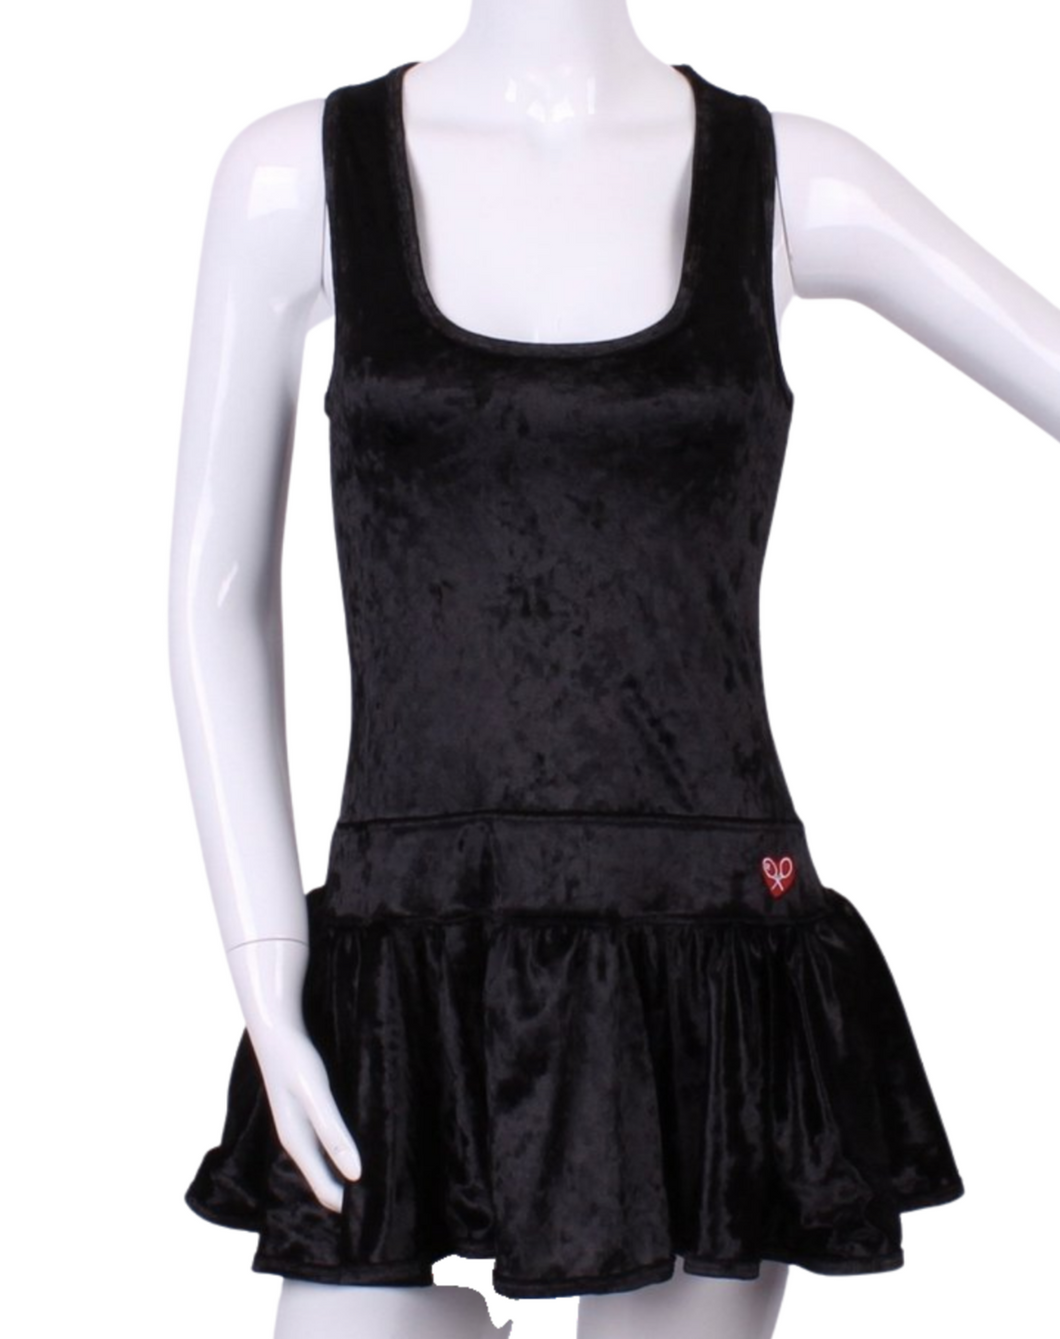 Crushed Black Velvet Sandra Dee Tennis Dress - I LOVE MY DOUBLES PARTNER!!!